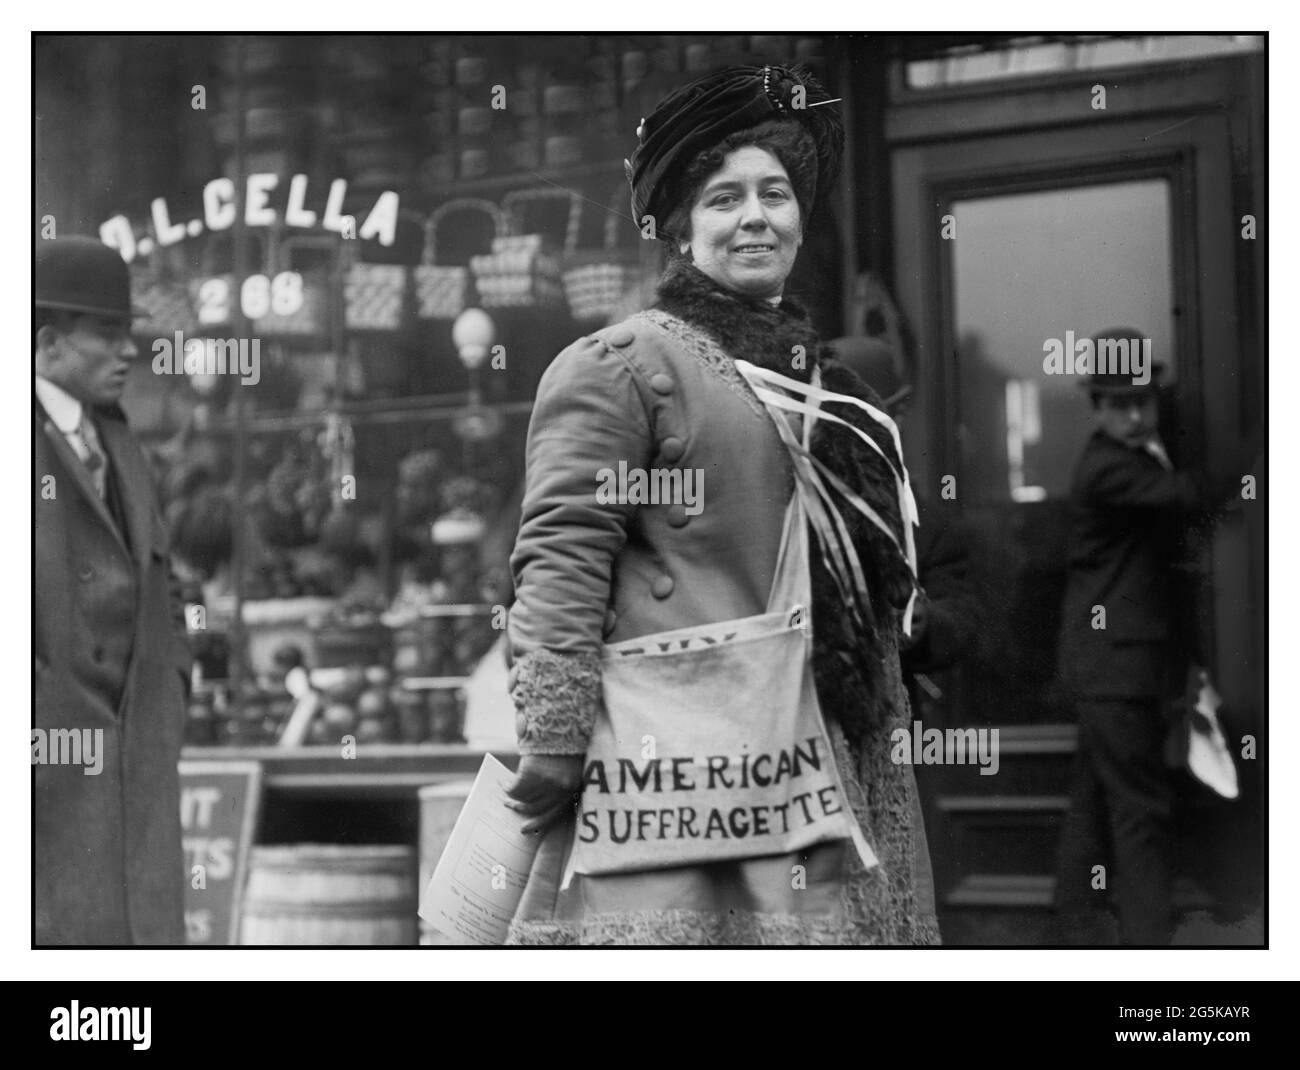 LE SUFFRAGE 1900 Mme H. Riordan, suffragette vendant le suffrage politique dépliant nouvelles pour promouvoir dix-neuvième Amendement à la Constitution des Etats-Unis bain News Service, éditeur New York USA 1/27/10 Banque D'Images